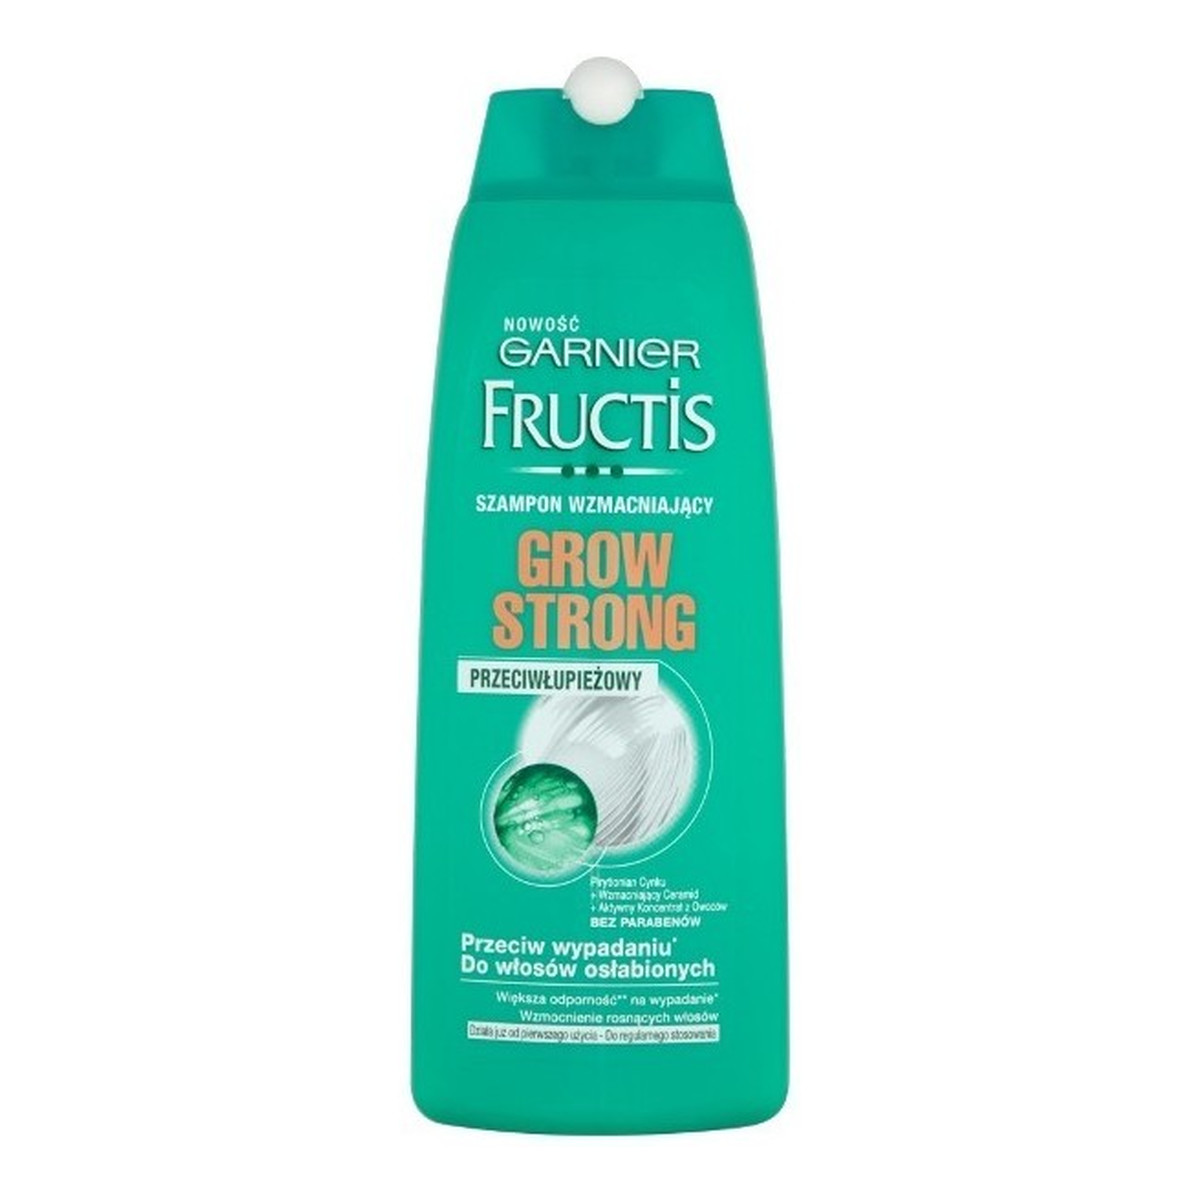 Garnier Fructis Grow Strong Szampon przeciwłupieżowy do włosów osłabionych 250ml